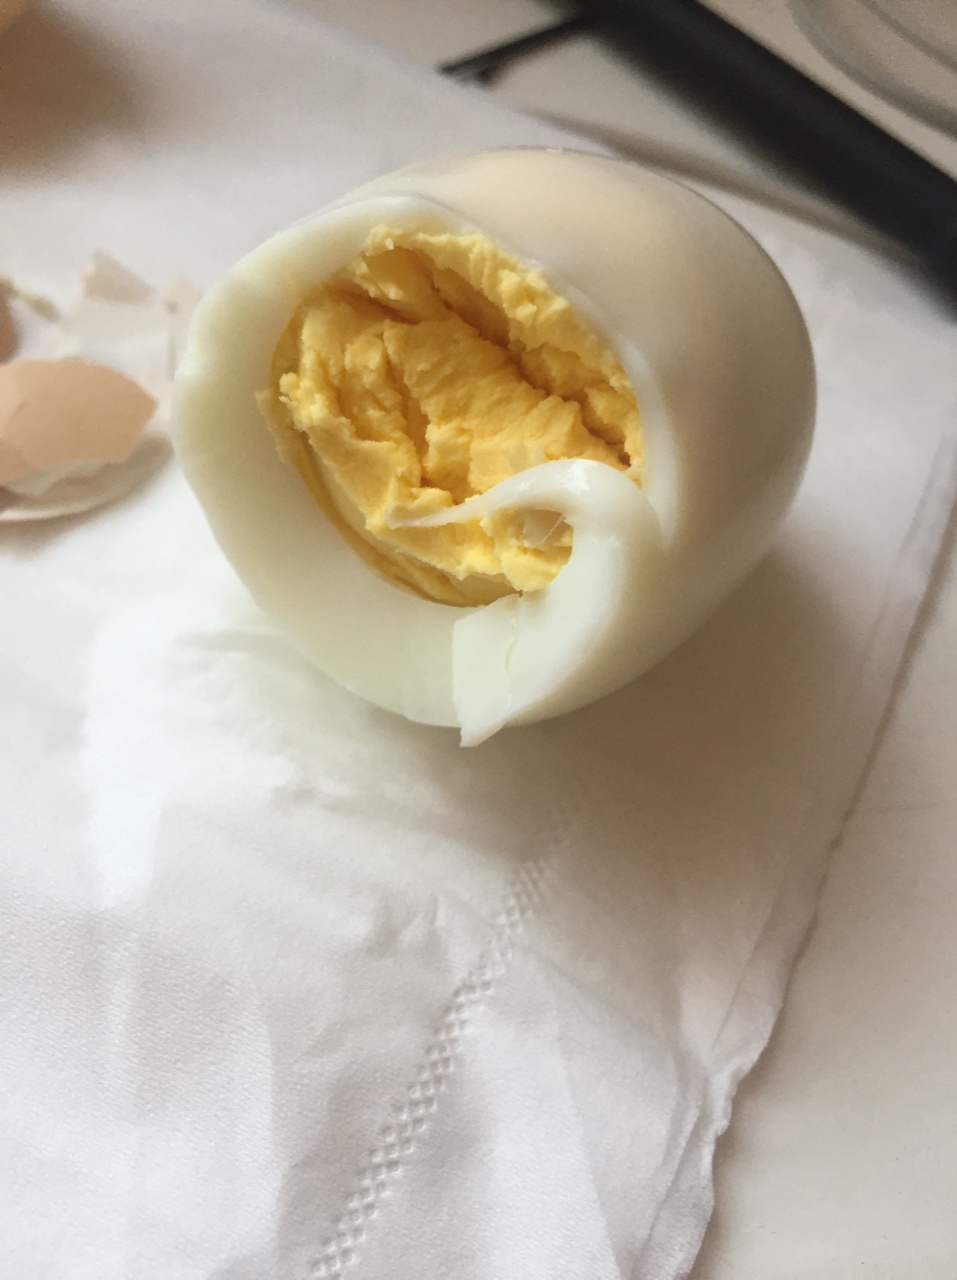 电饭锅煮鸡蛋